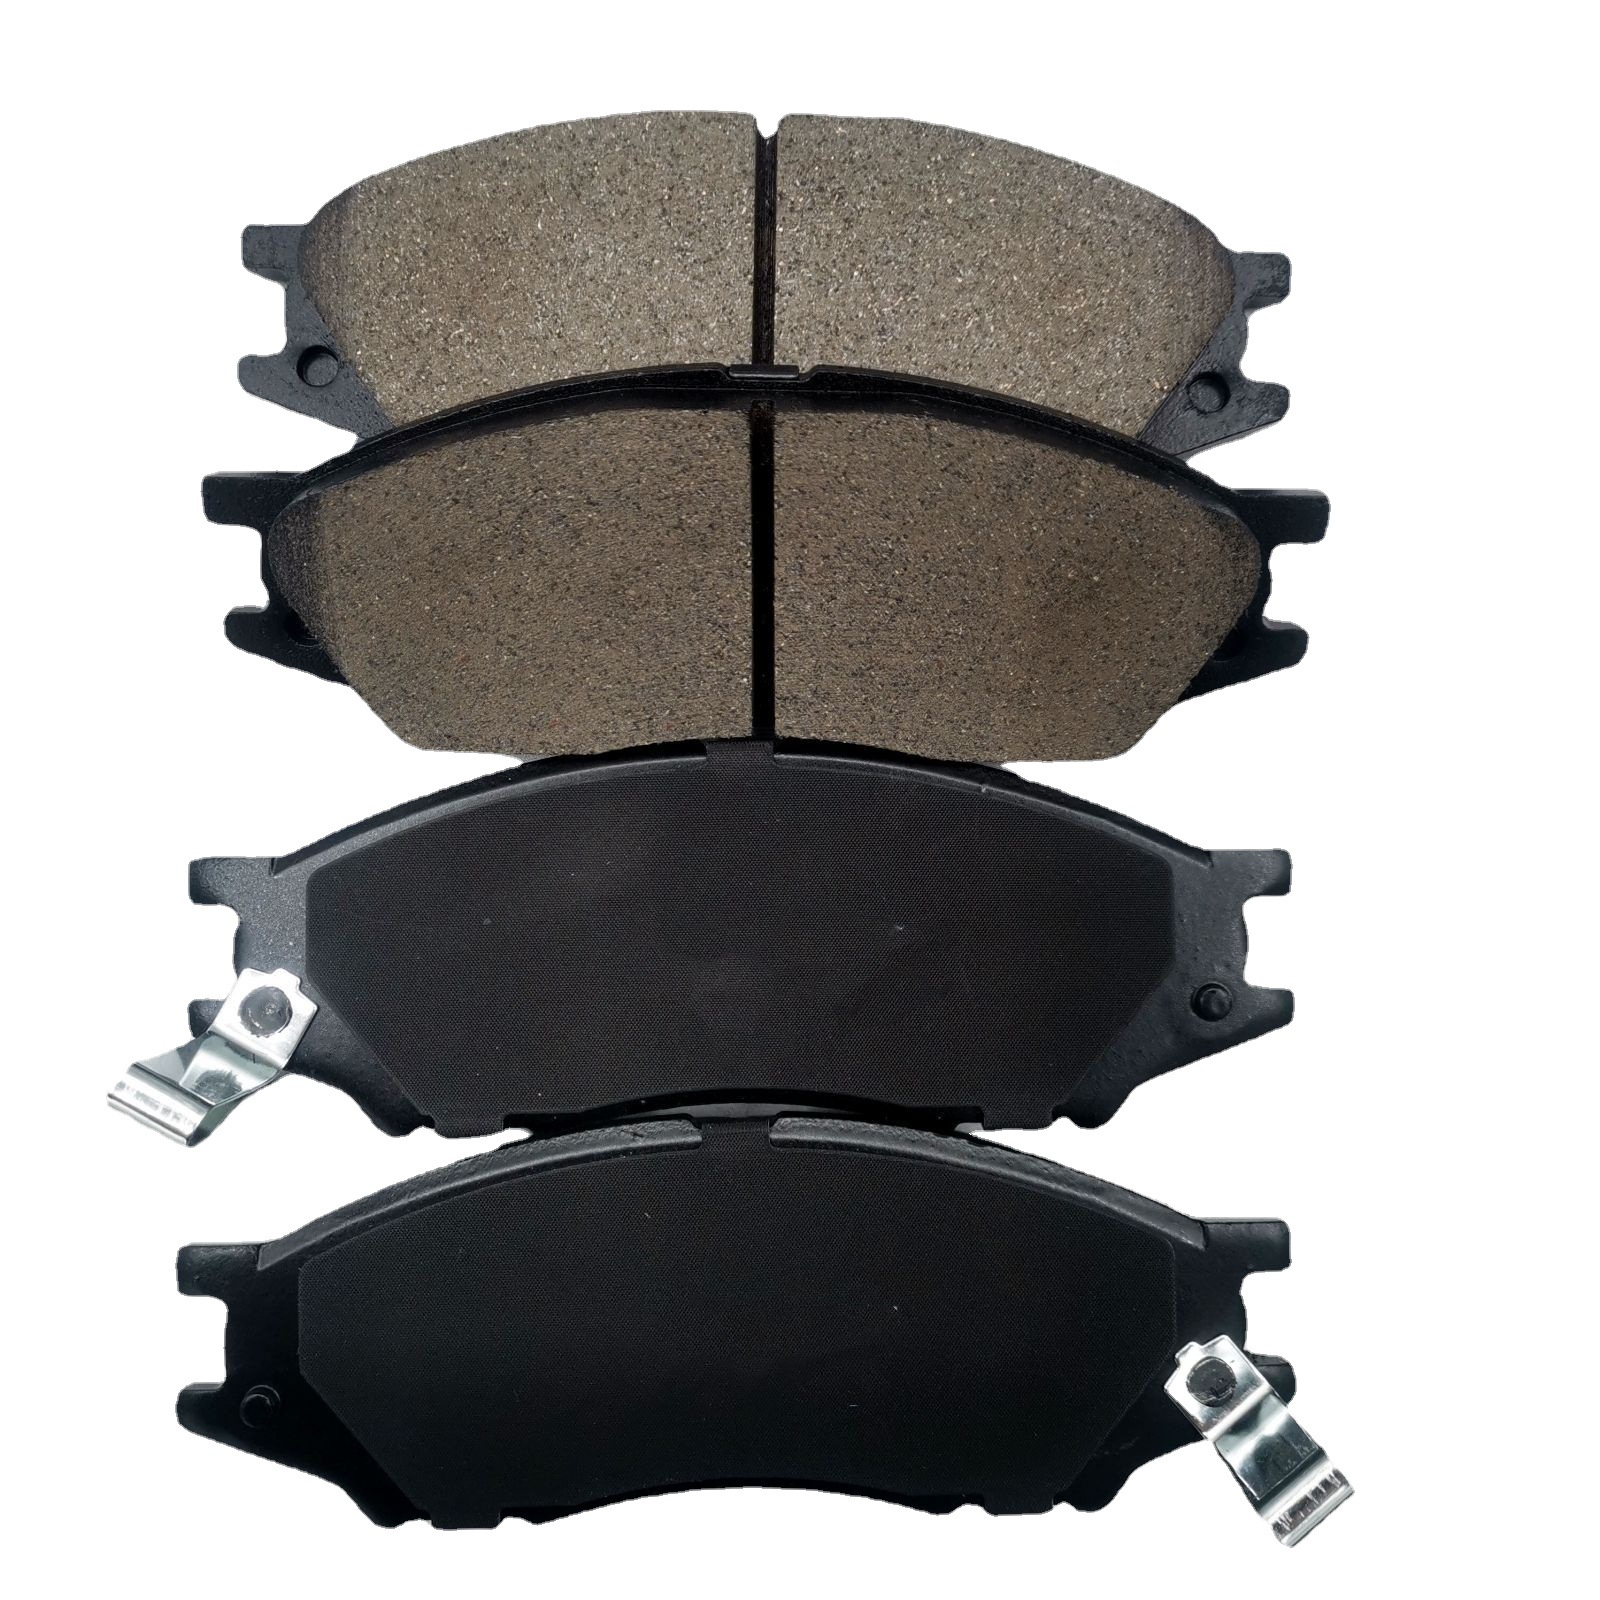 Factory Wholesale Cars Brake Pads Brake Shoes Disc Drum Sp1156 Ceramic Semi-Metal Less Metal Sheet